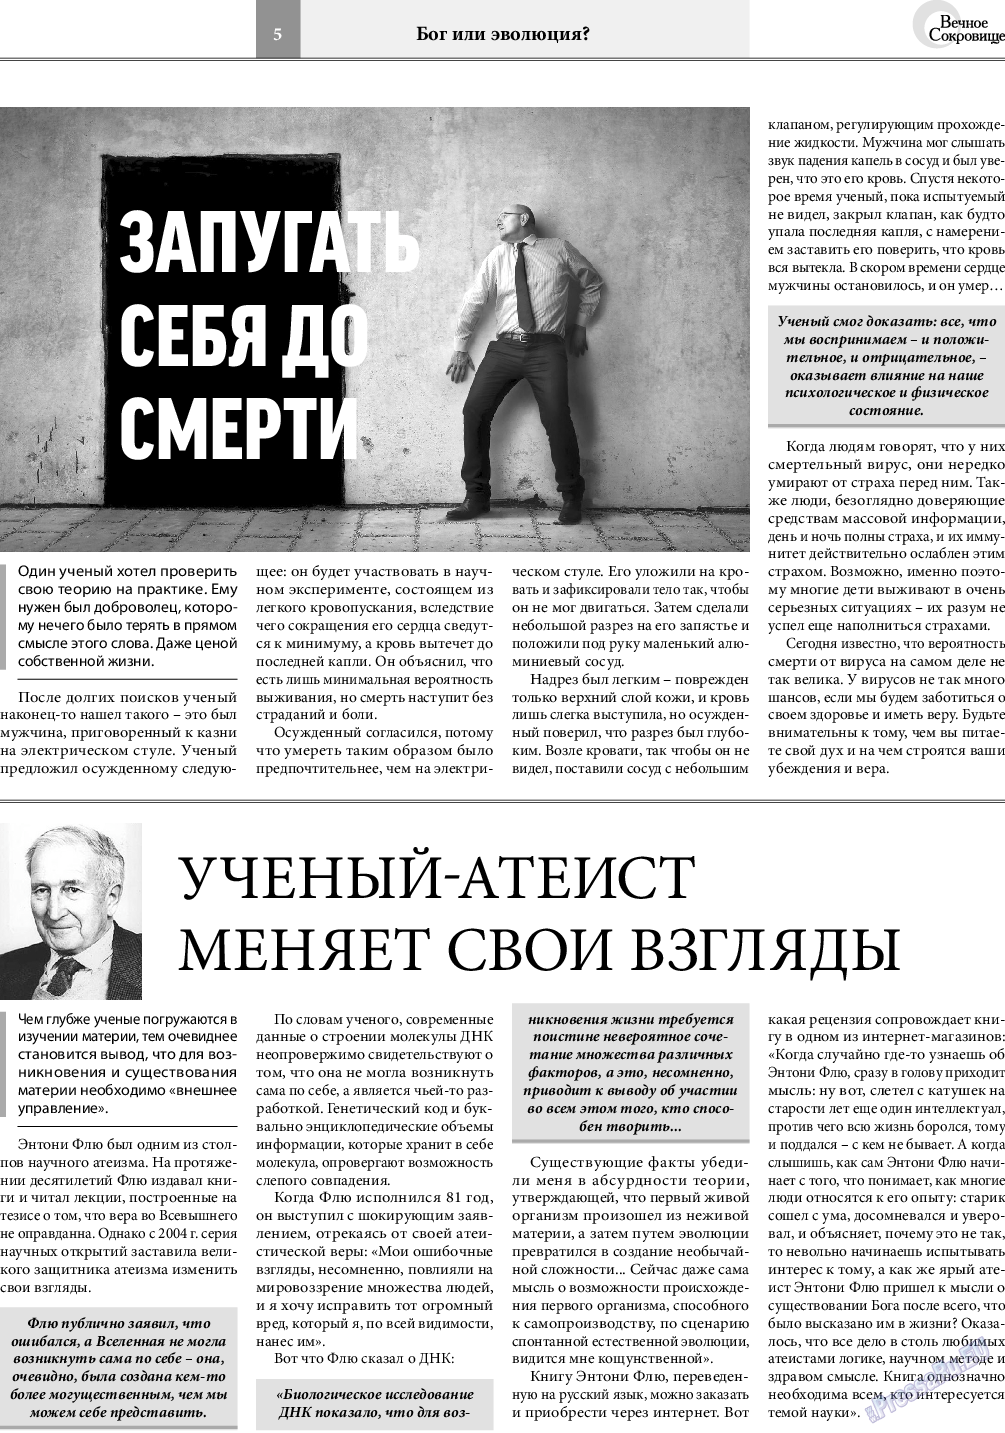 Вечное сокровище, газета. 2021 №5 стр.5